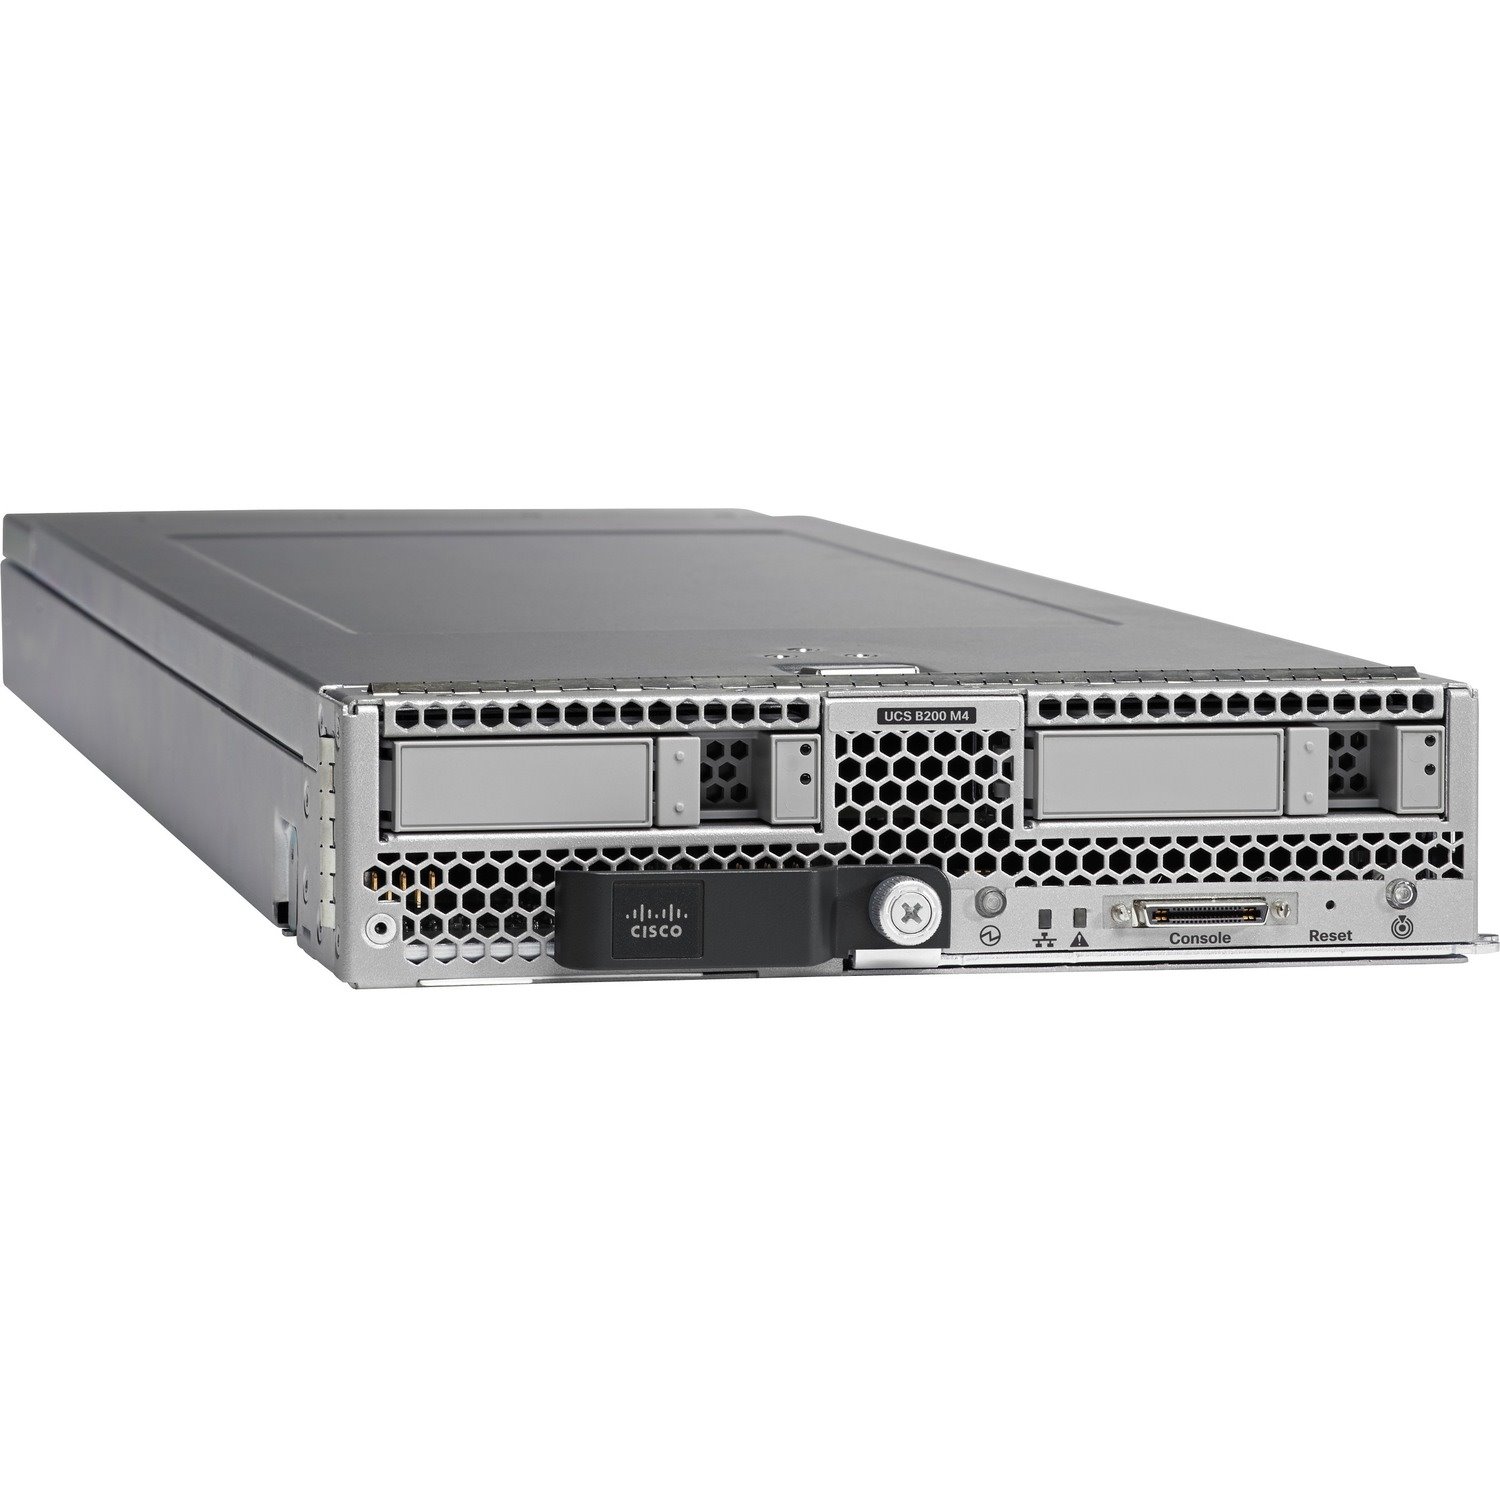 Cisco B200 M4 Blade Server - 2 x Intel Xeon E5-2690 v3 2.60 GHz - 256 GB RAM - Serial Attached SCSI (SAS), Serial ATA Controller